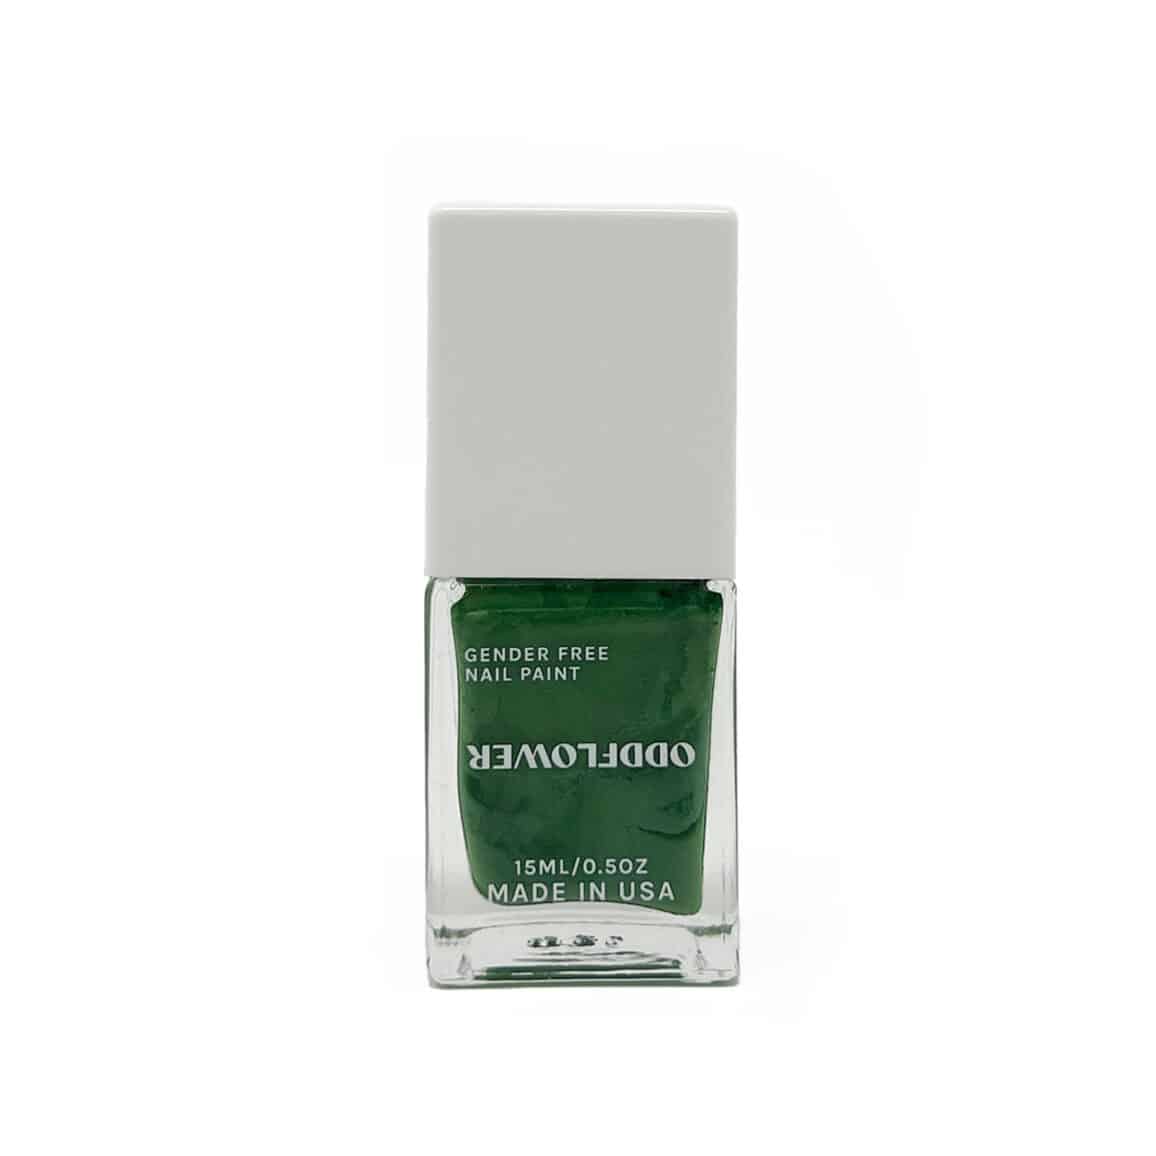 Garden green nail polish bottle